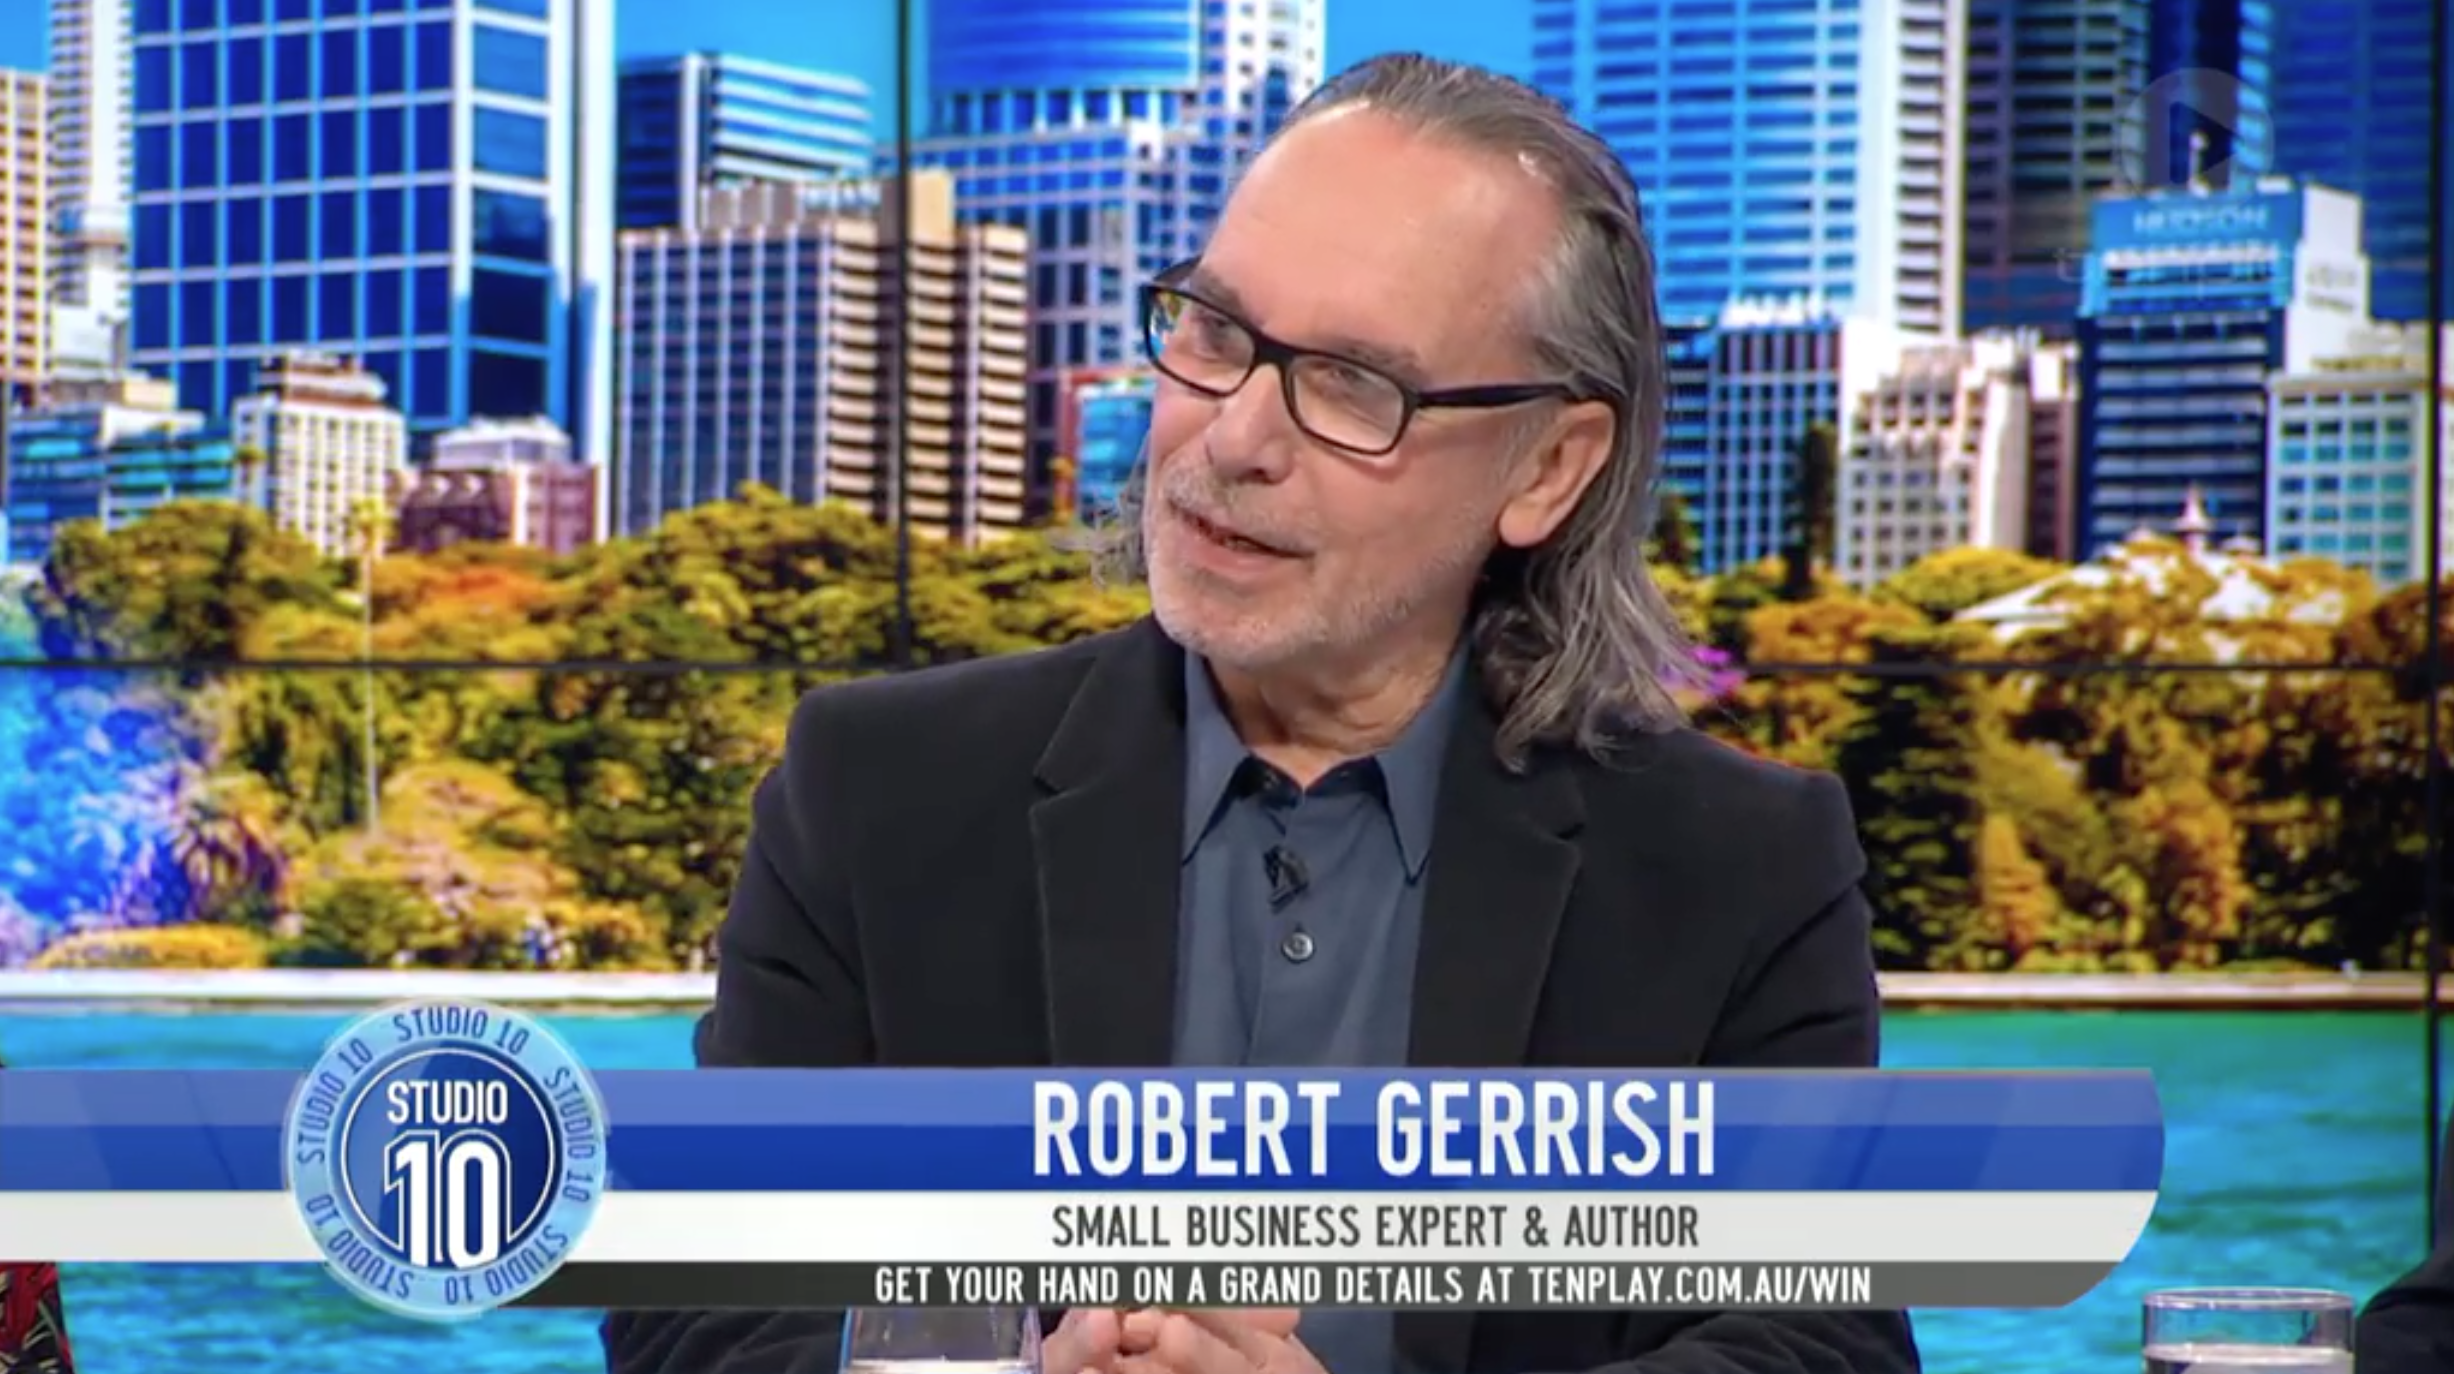 Robert Gerrish On Australian TV